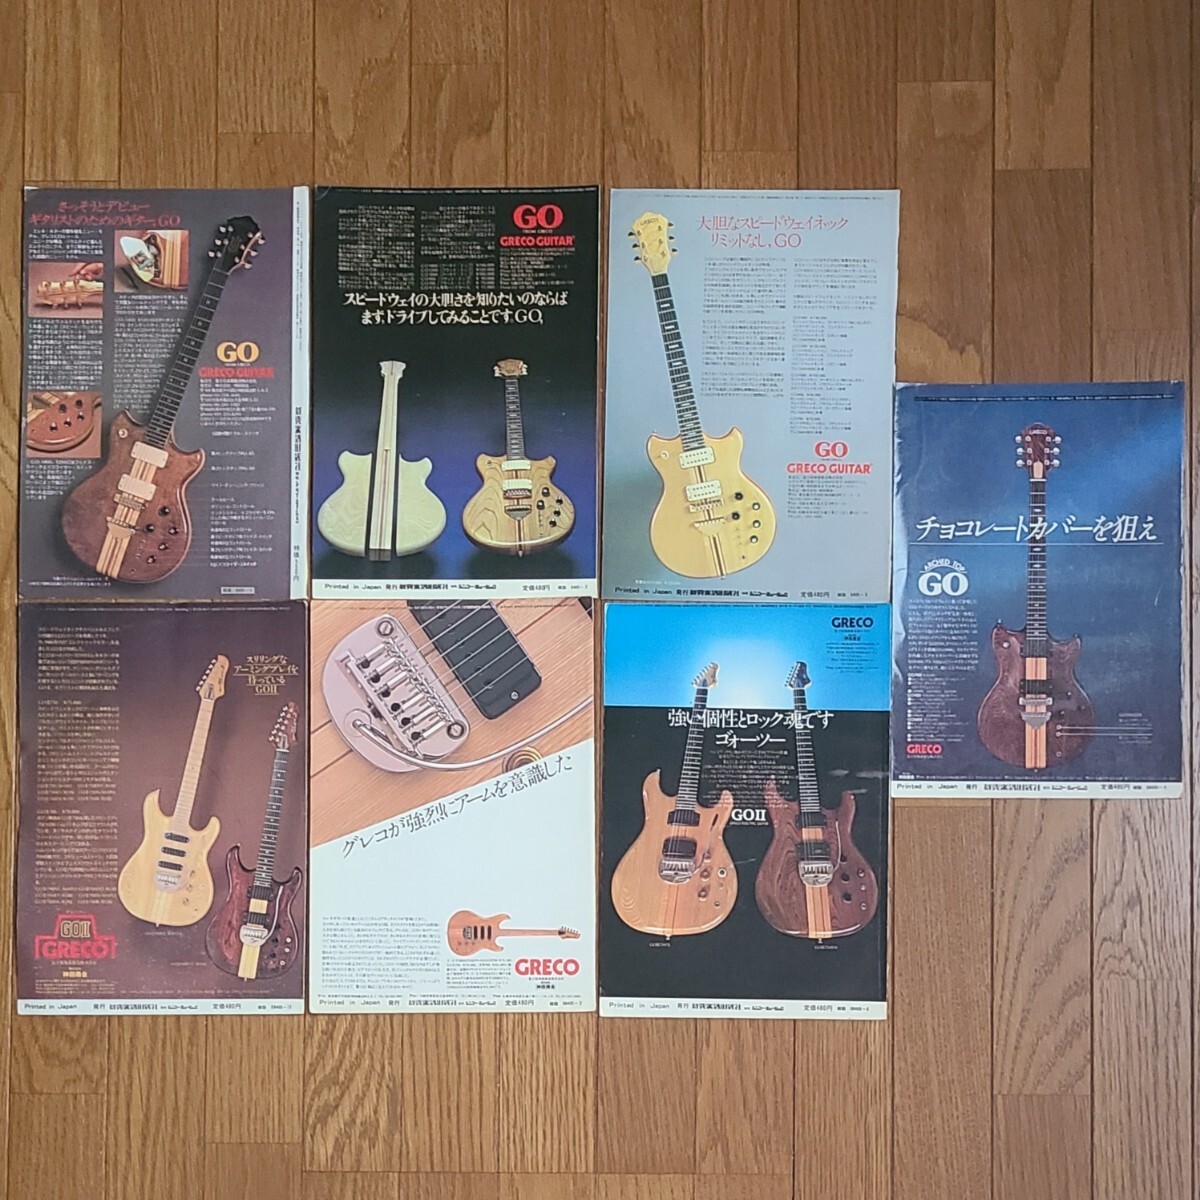 GRECO グレコ ギター広告 1978年 1979年 【切り抜き】GRECO GOモデル GOⅡモデル ※雑誌裏表紙/傷みあり (裏面 日本ギブソン広告)の画像1